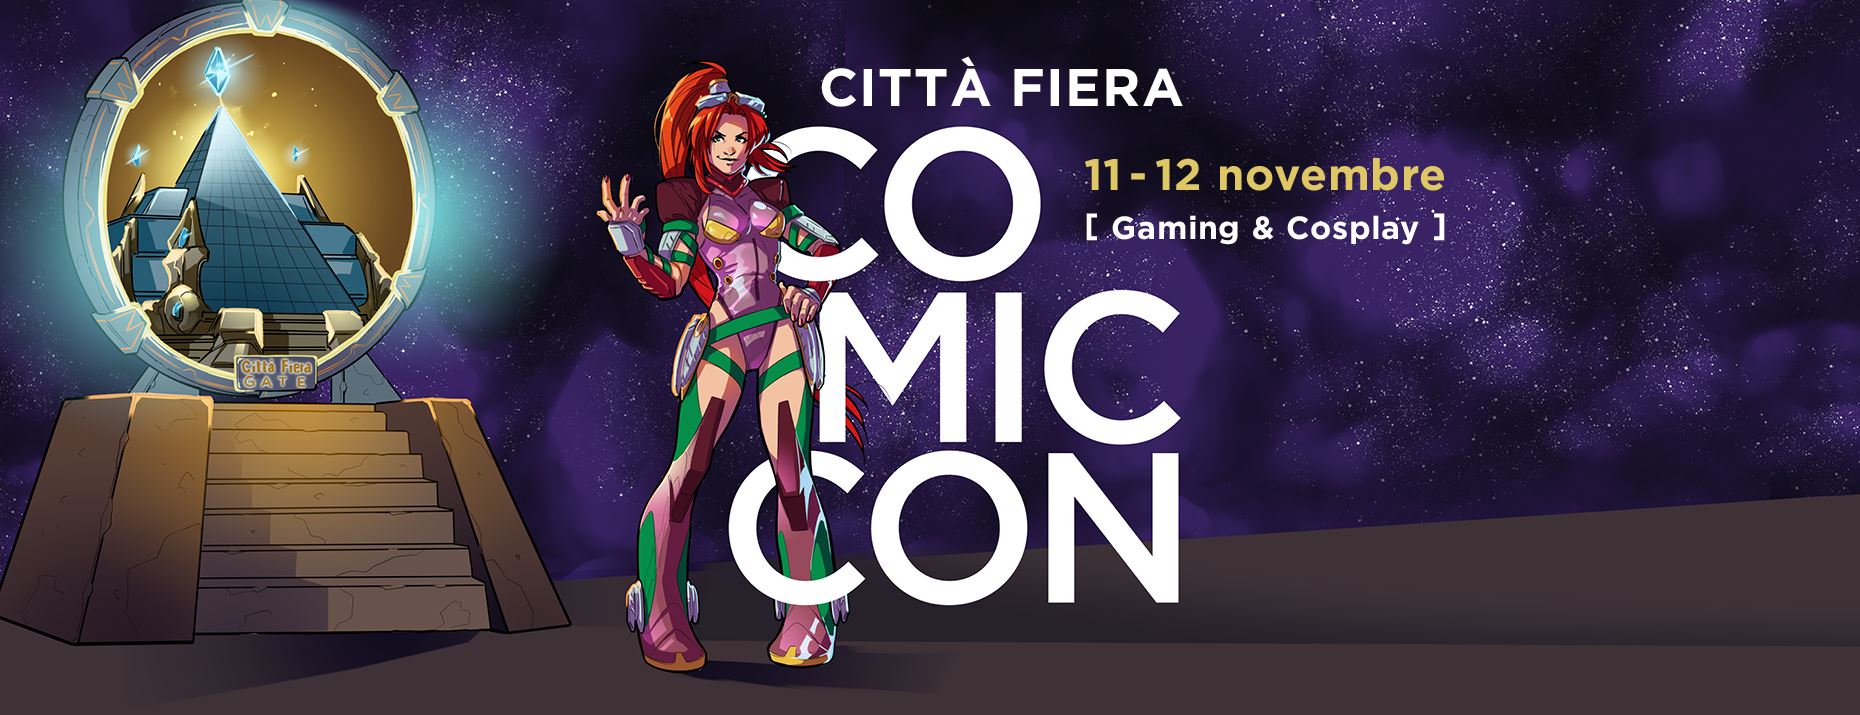 Città Fiera Comic-Con 11-12 Novembre